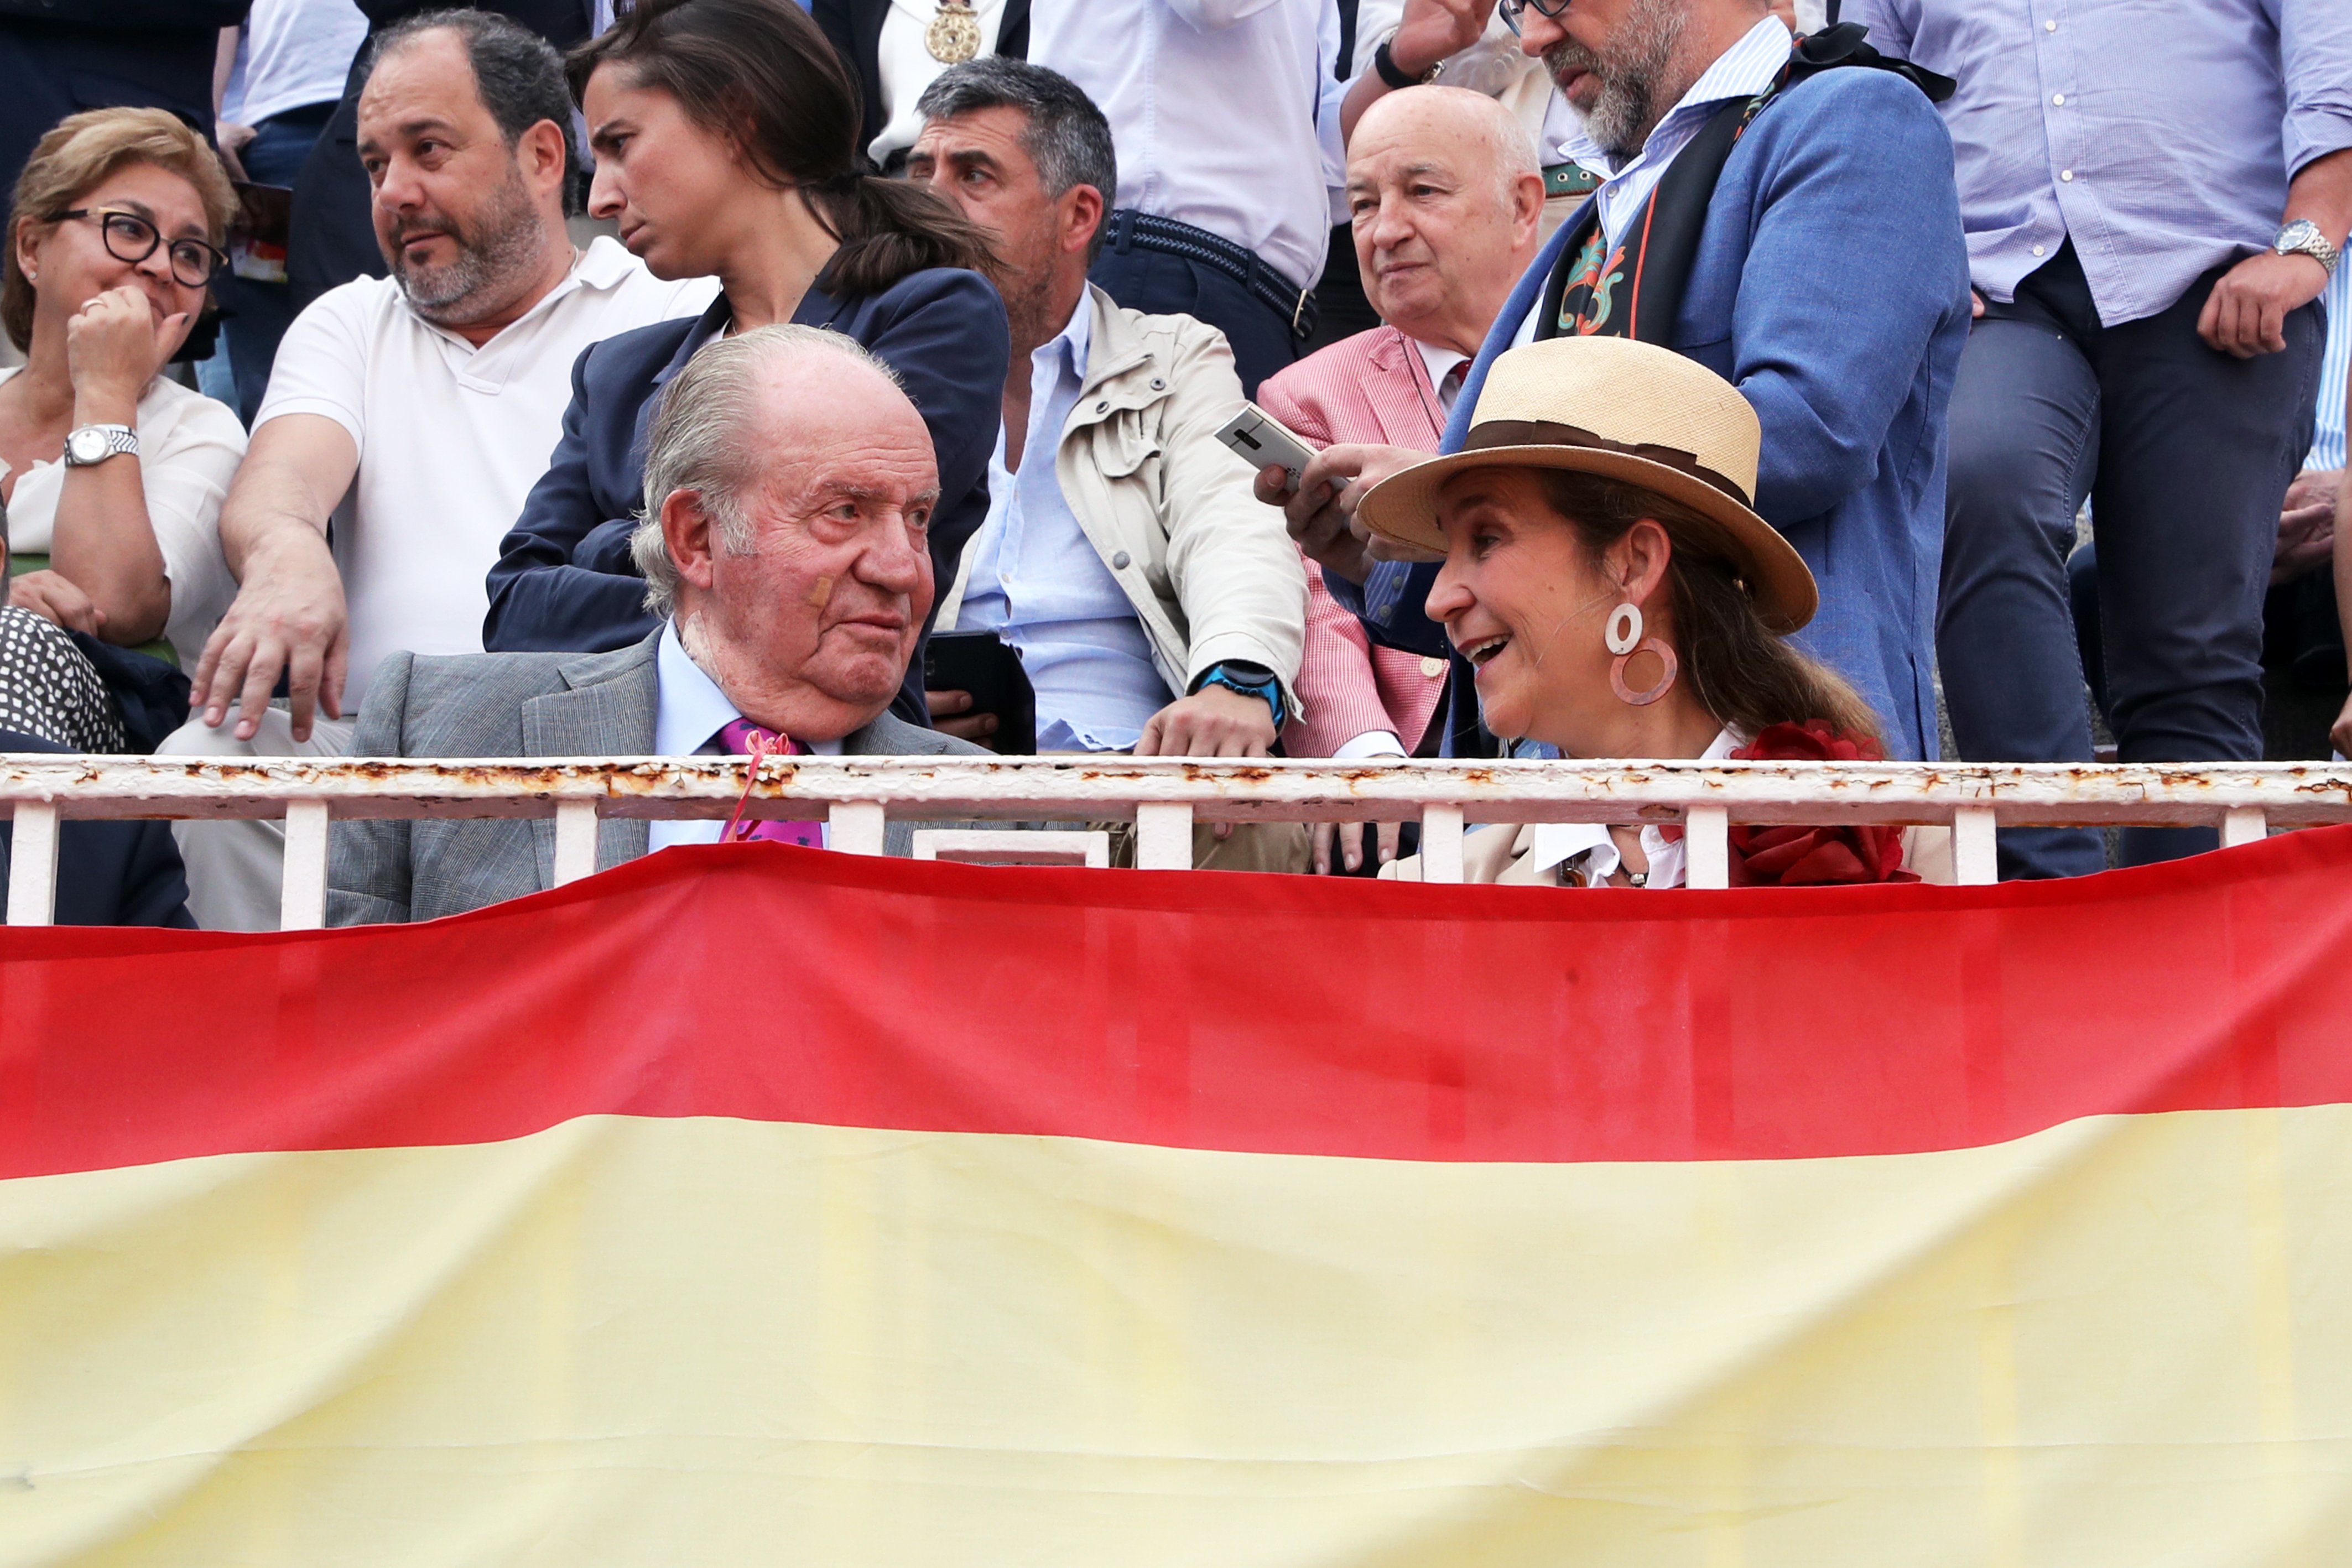 Juan Carlos y la dentadura postiza: la insinuación de Peñafiel para humillar al emérito